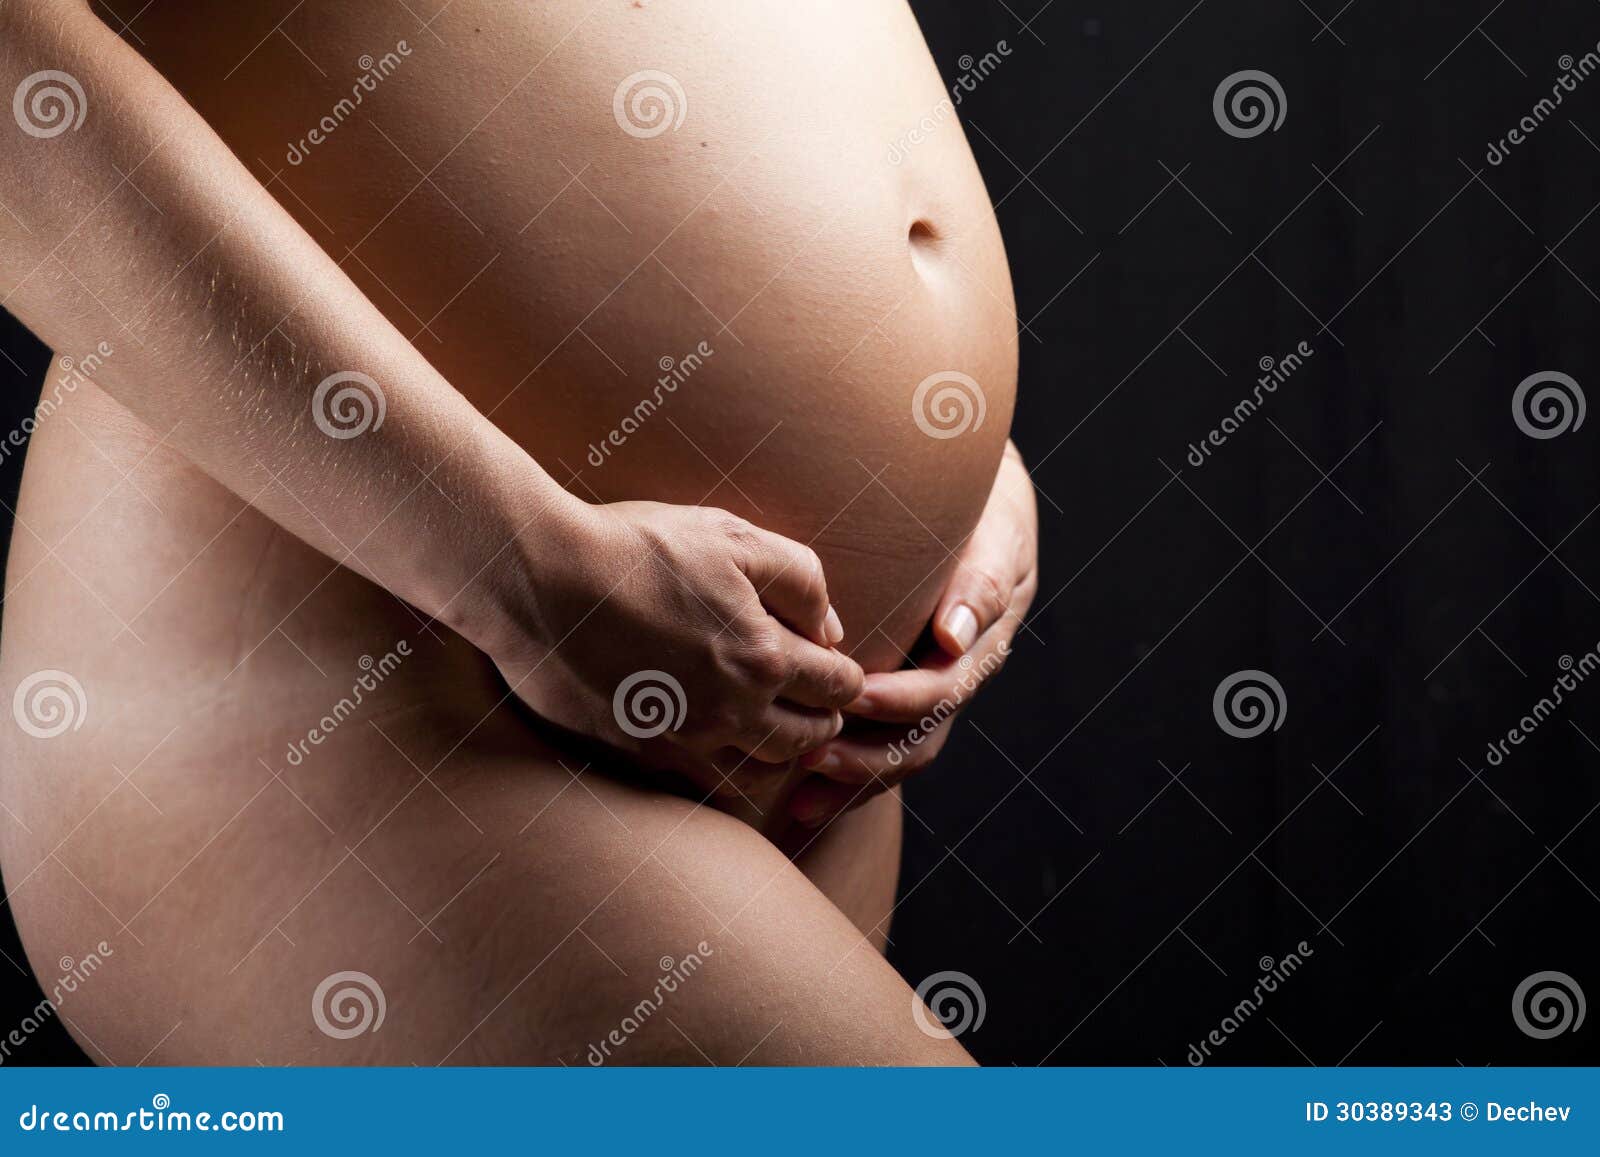 голые животики беременных фото 94